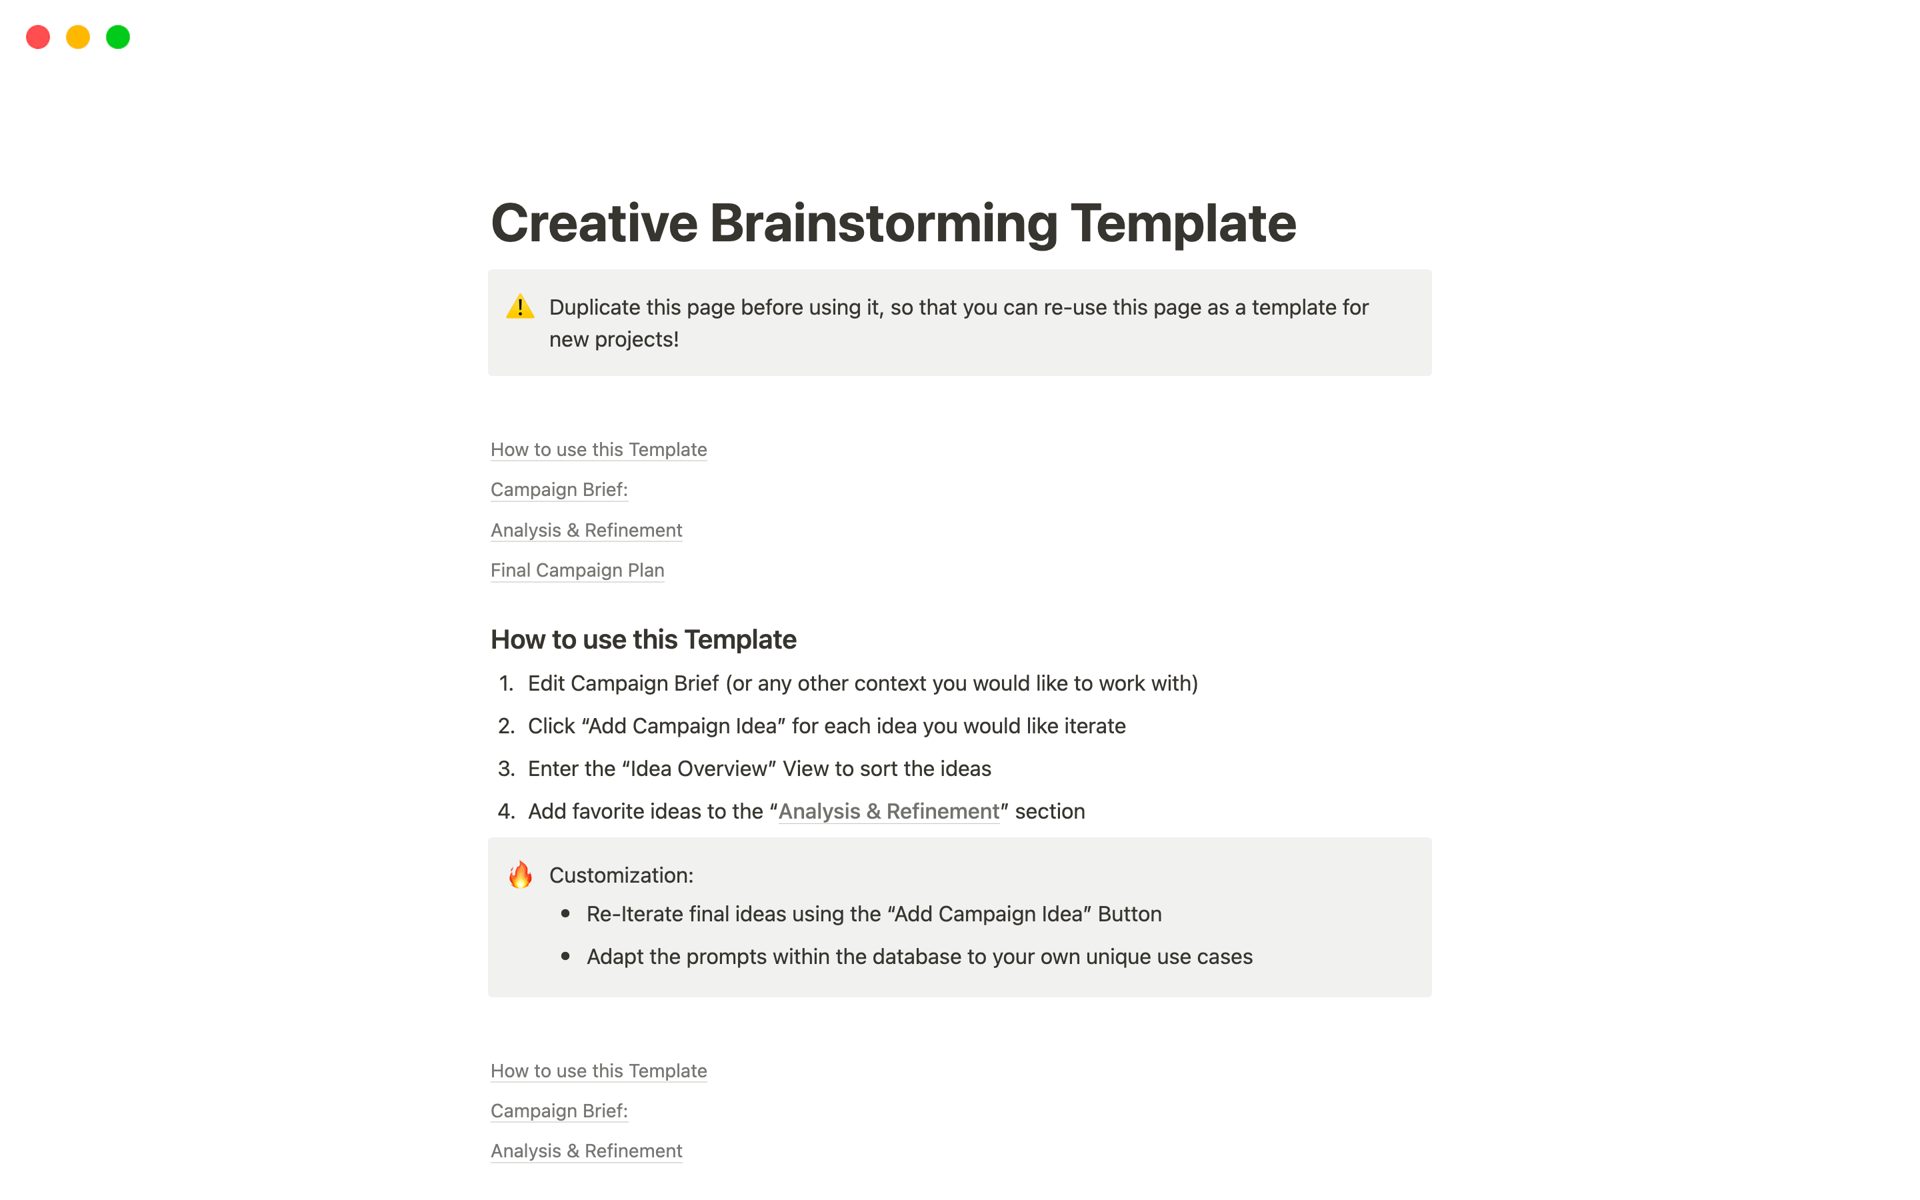 Uma prévia do modelo para Creative Brainstorming Template 